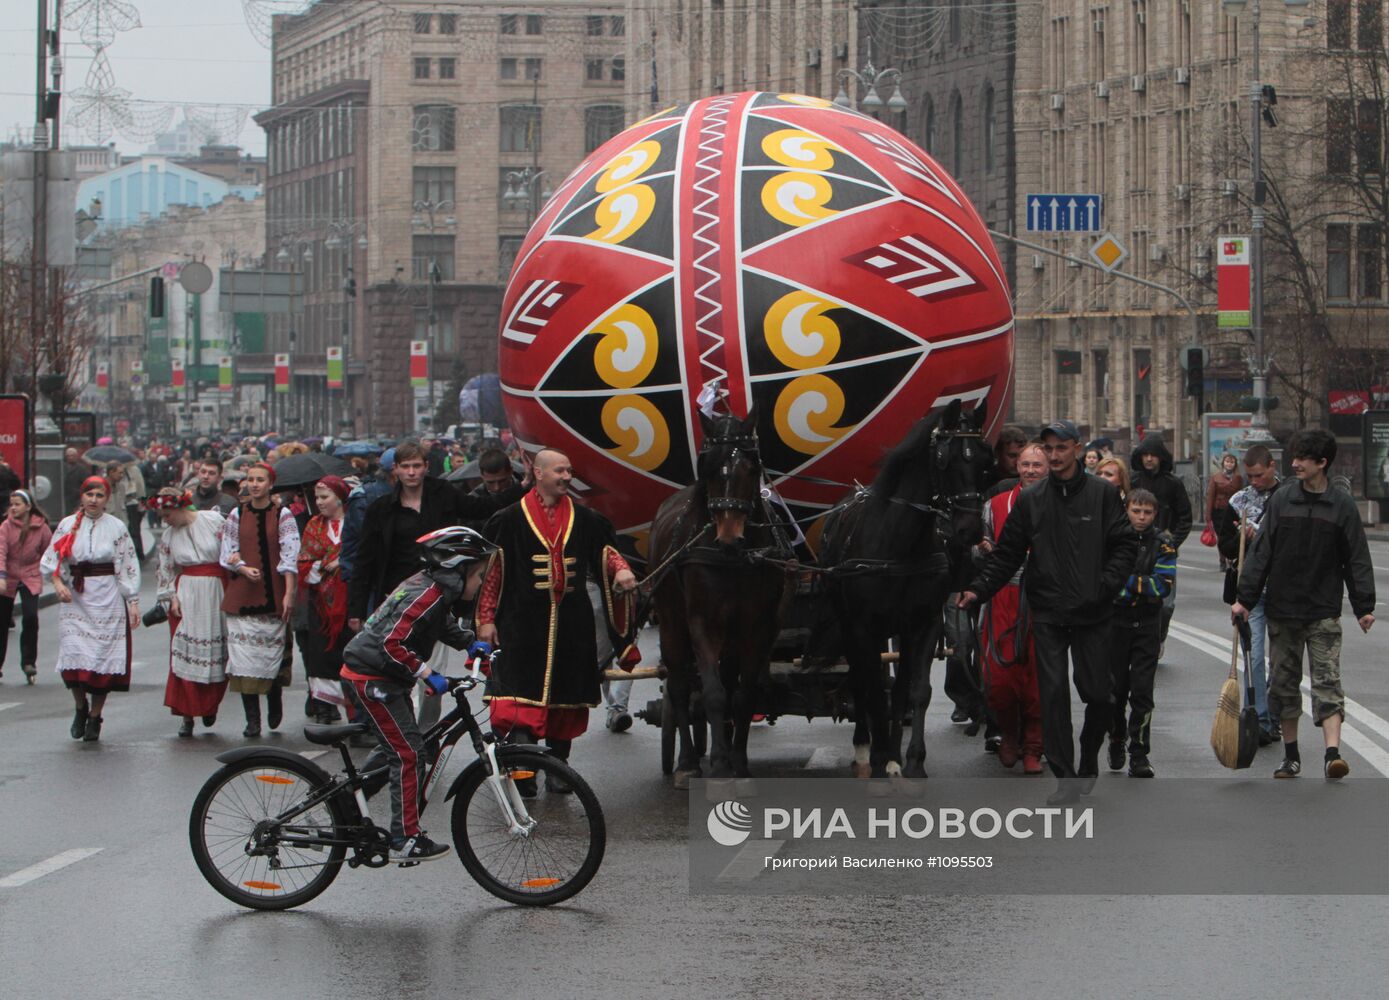 В честь праздника Пасхи в Киеве установили гигантскую писанку